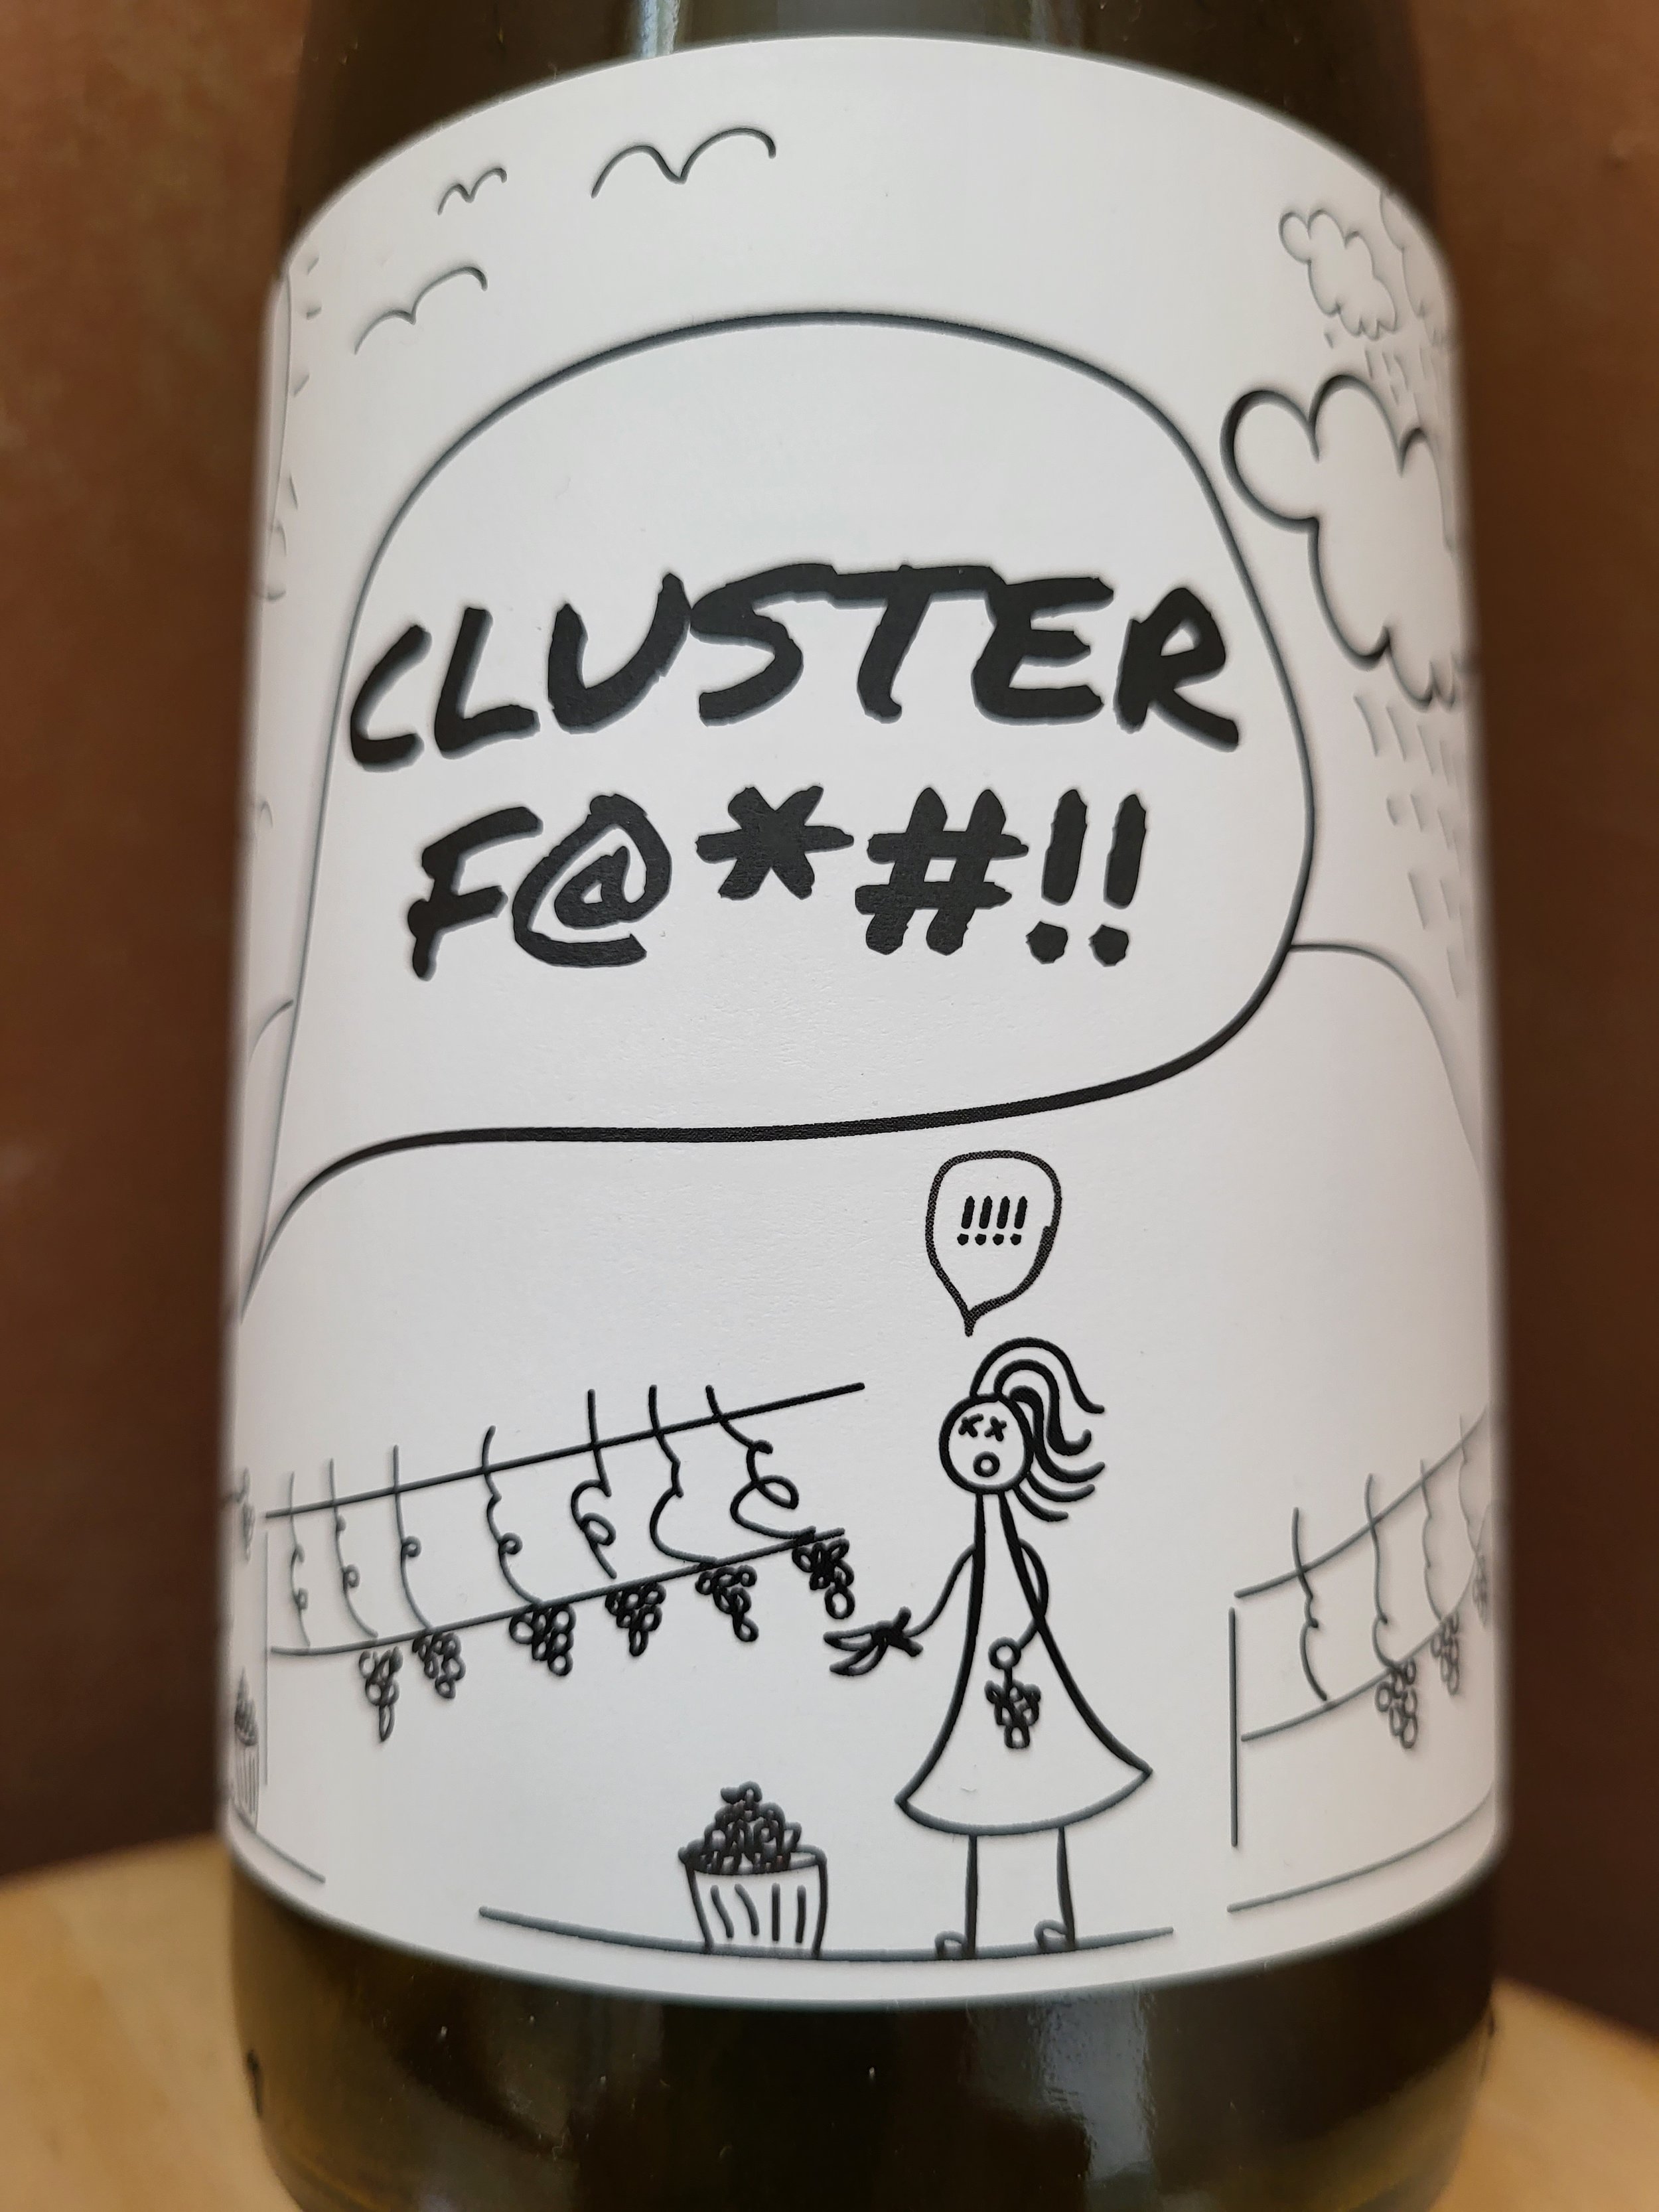 Clusterf.jpg